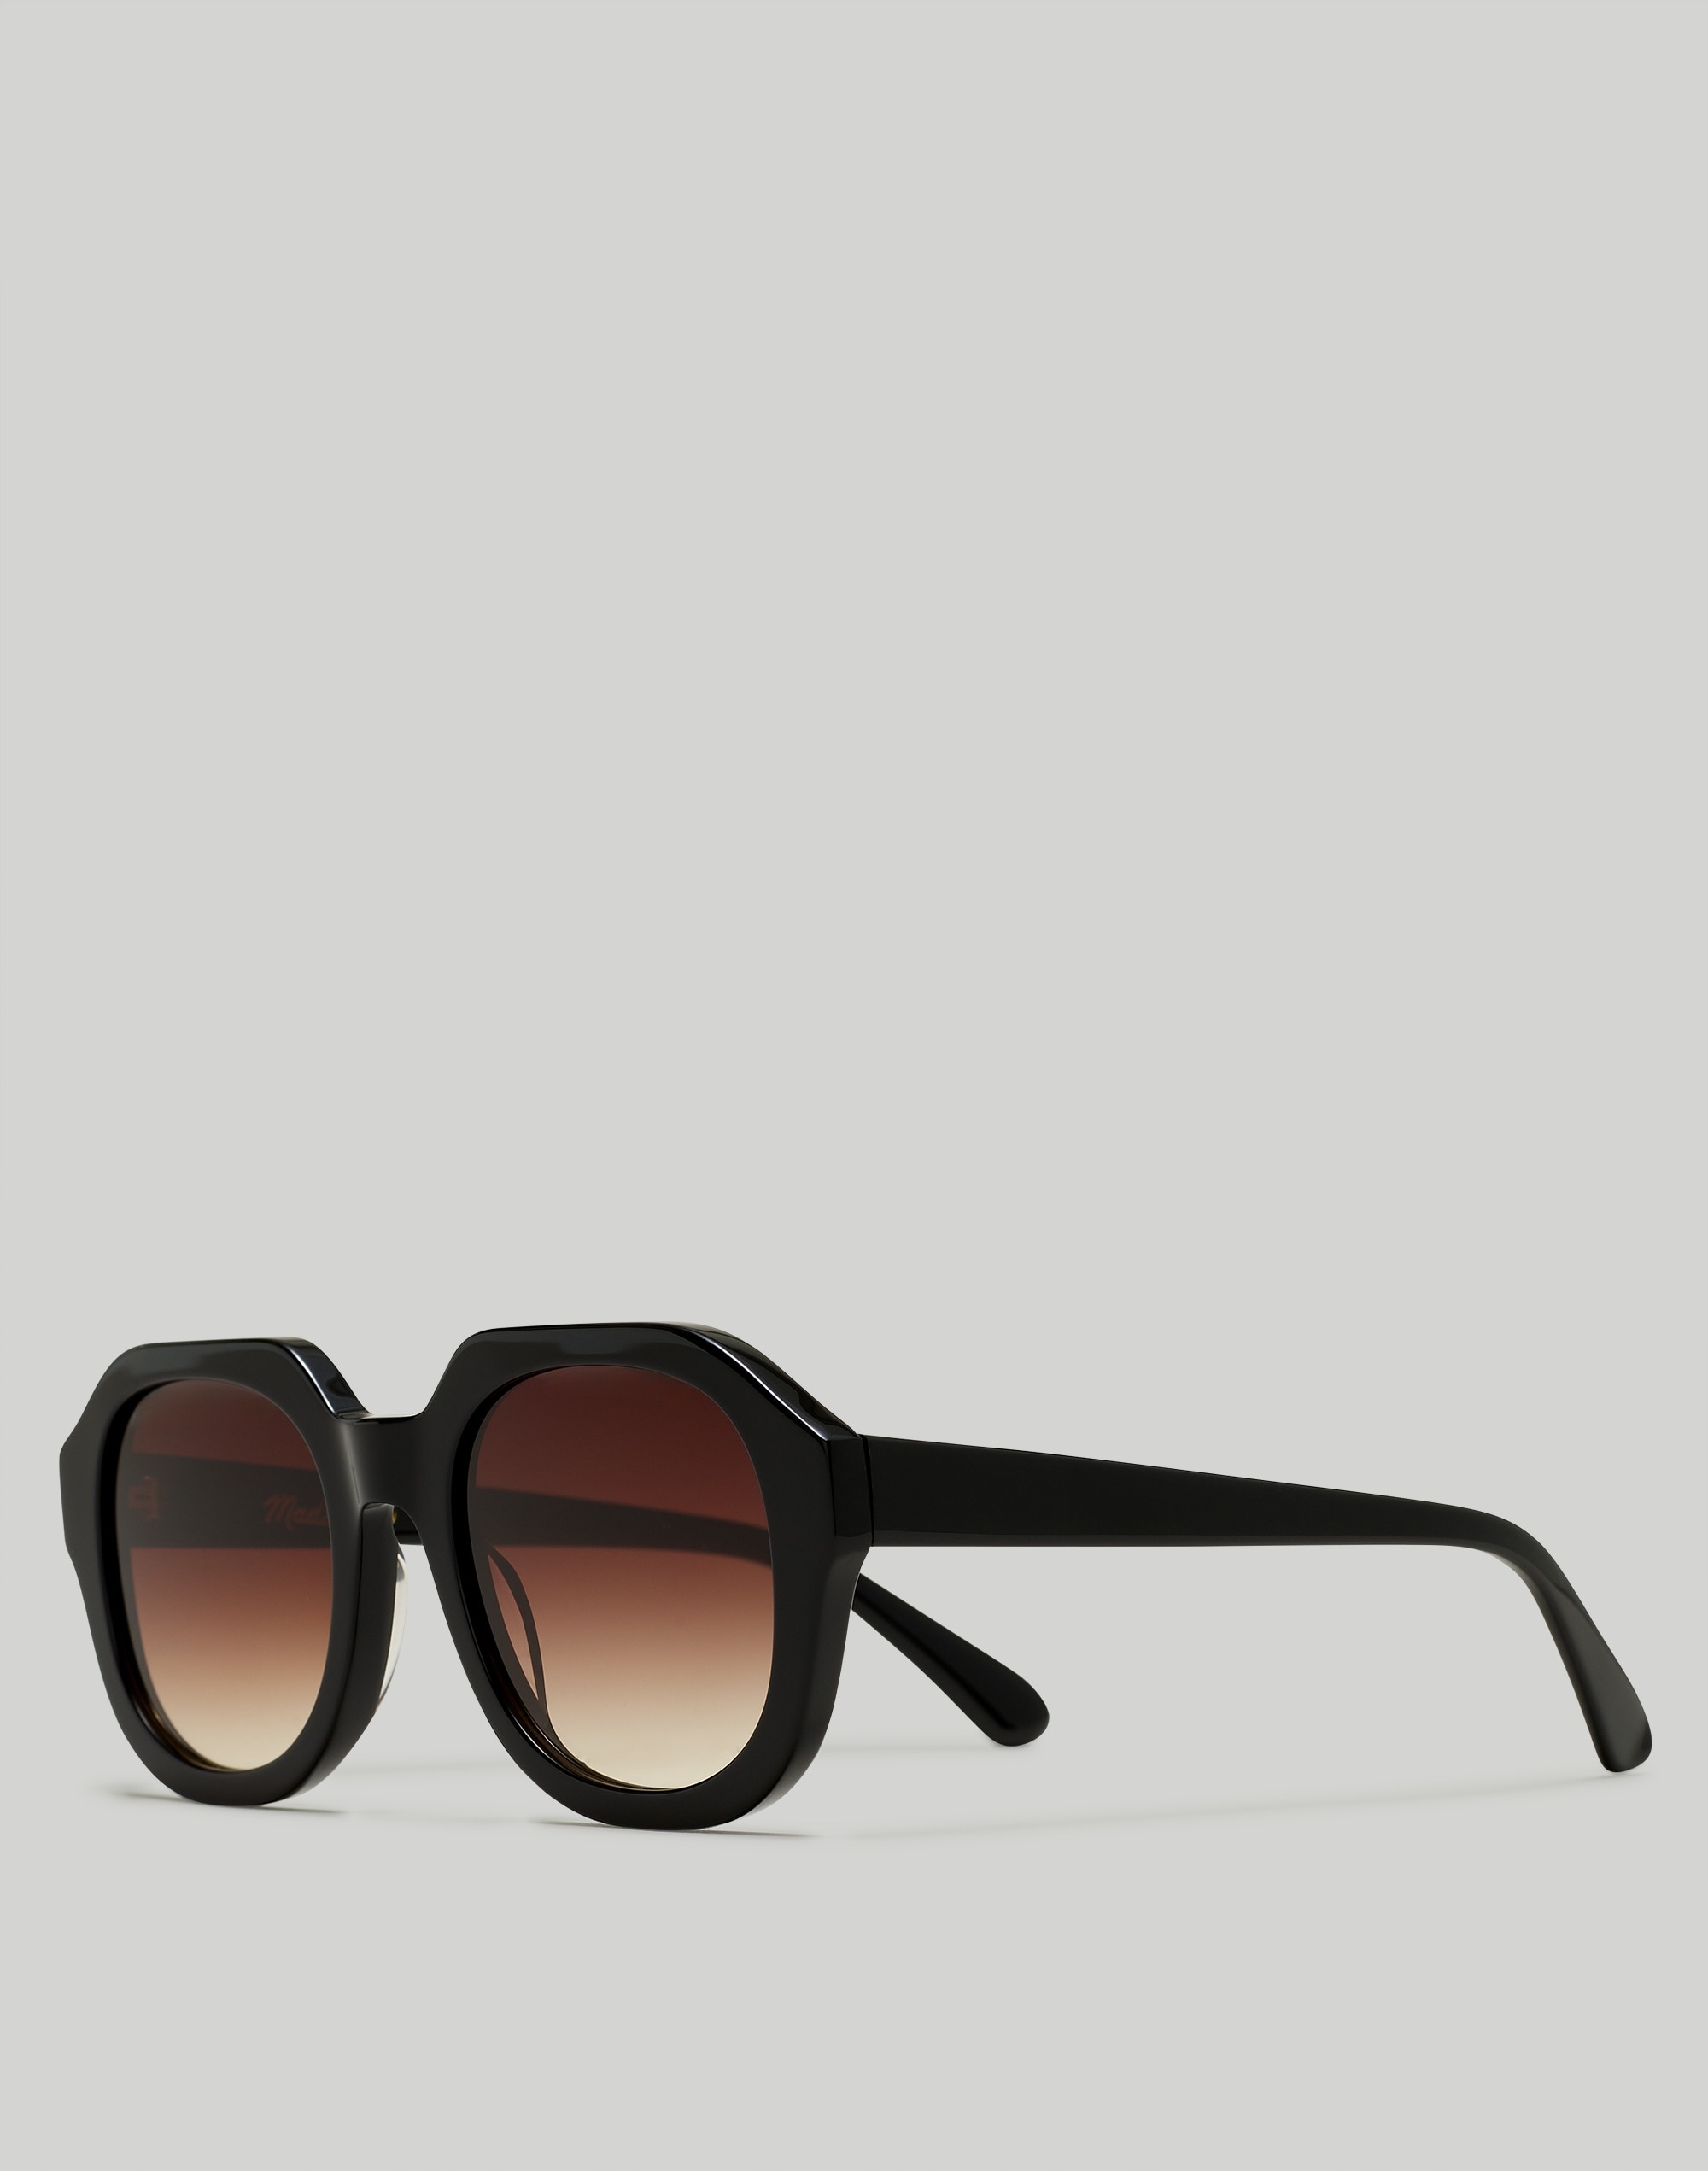 Mw Ralston Sunglasses In True Black